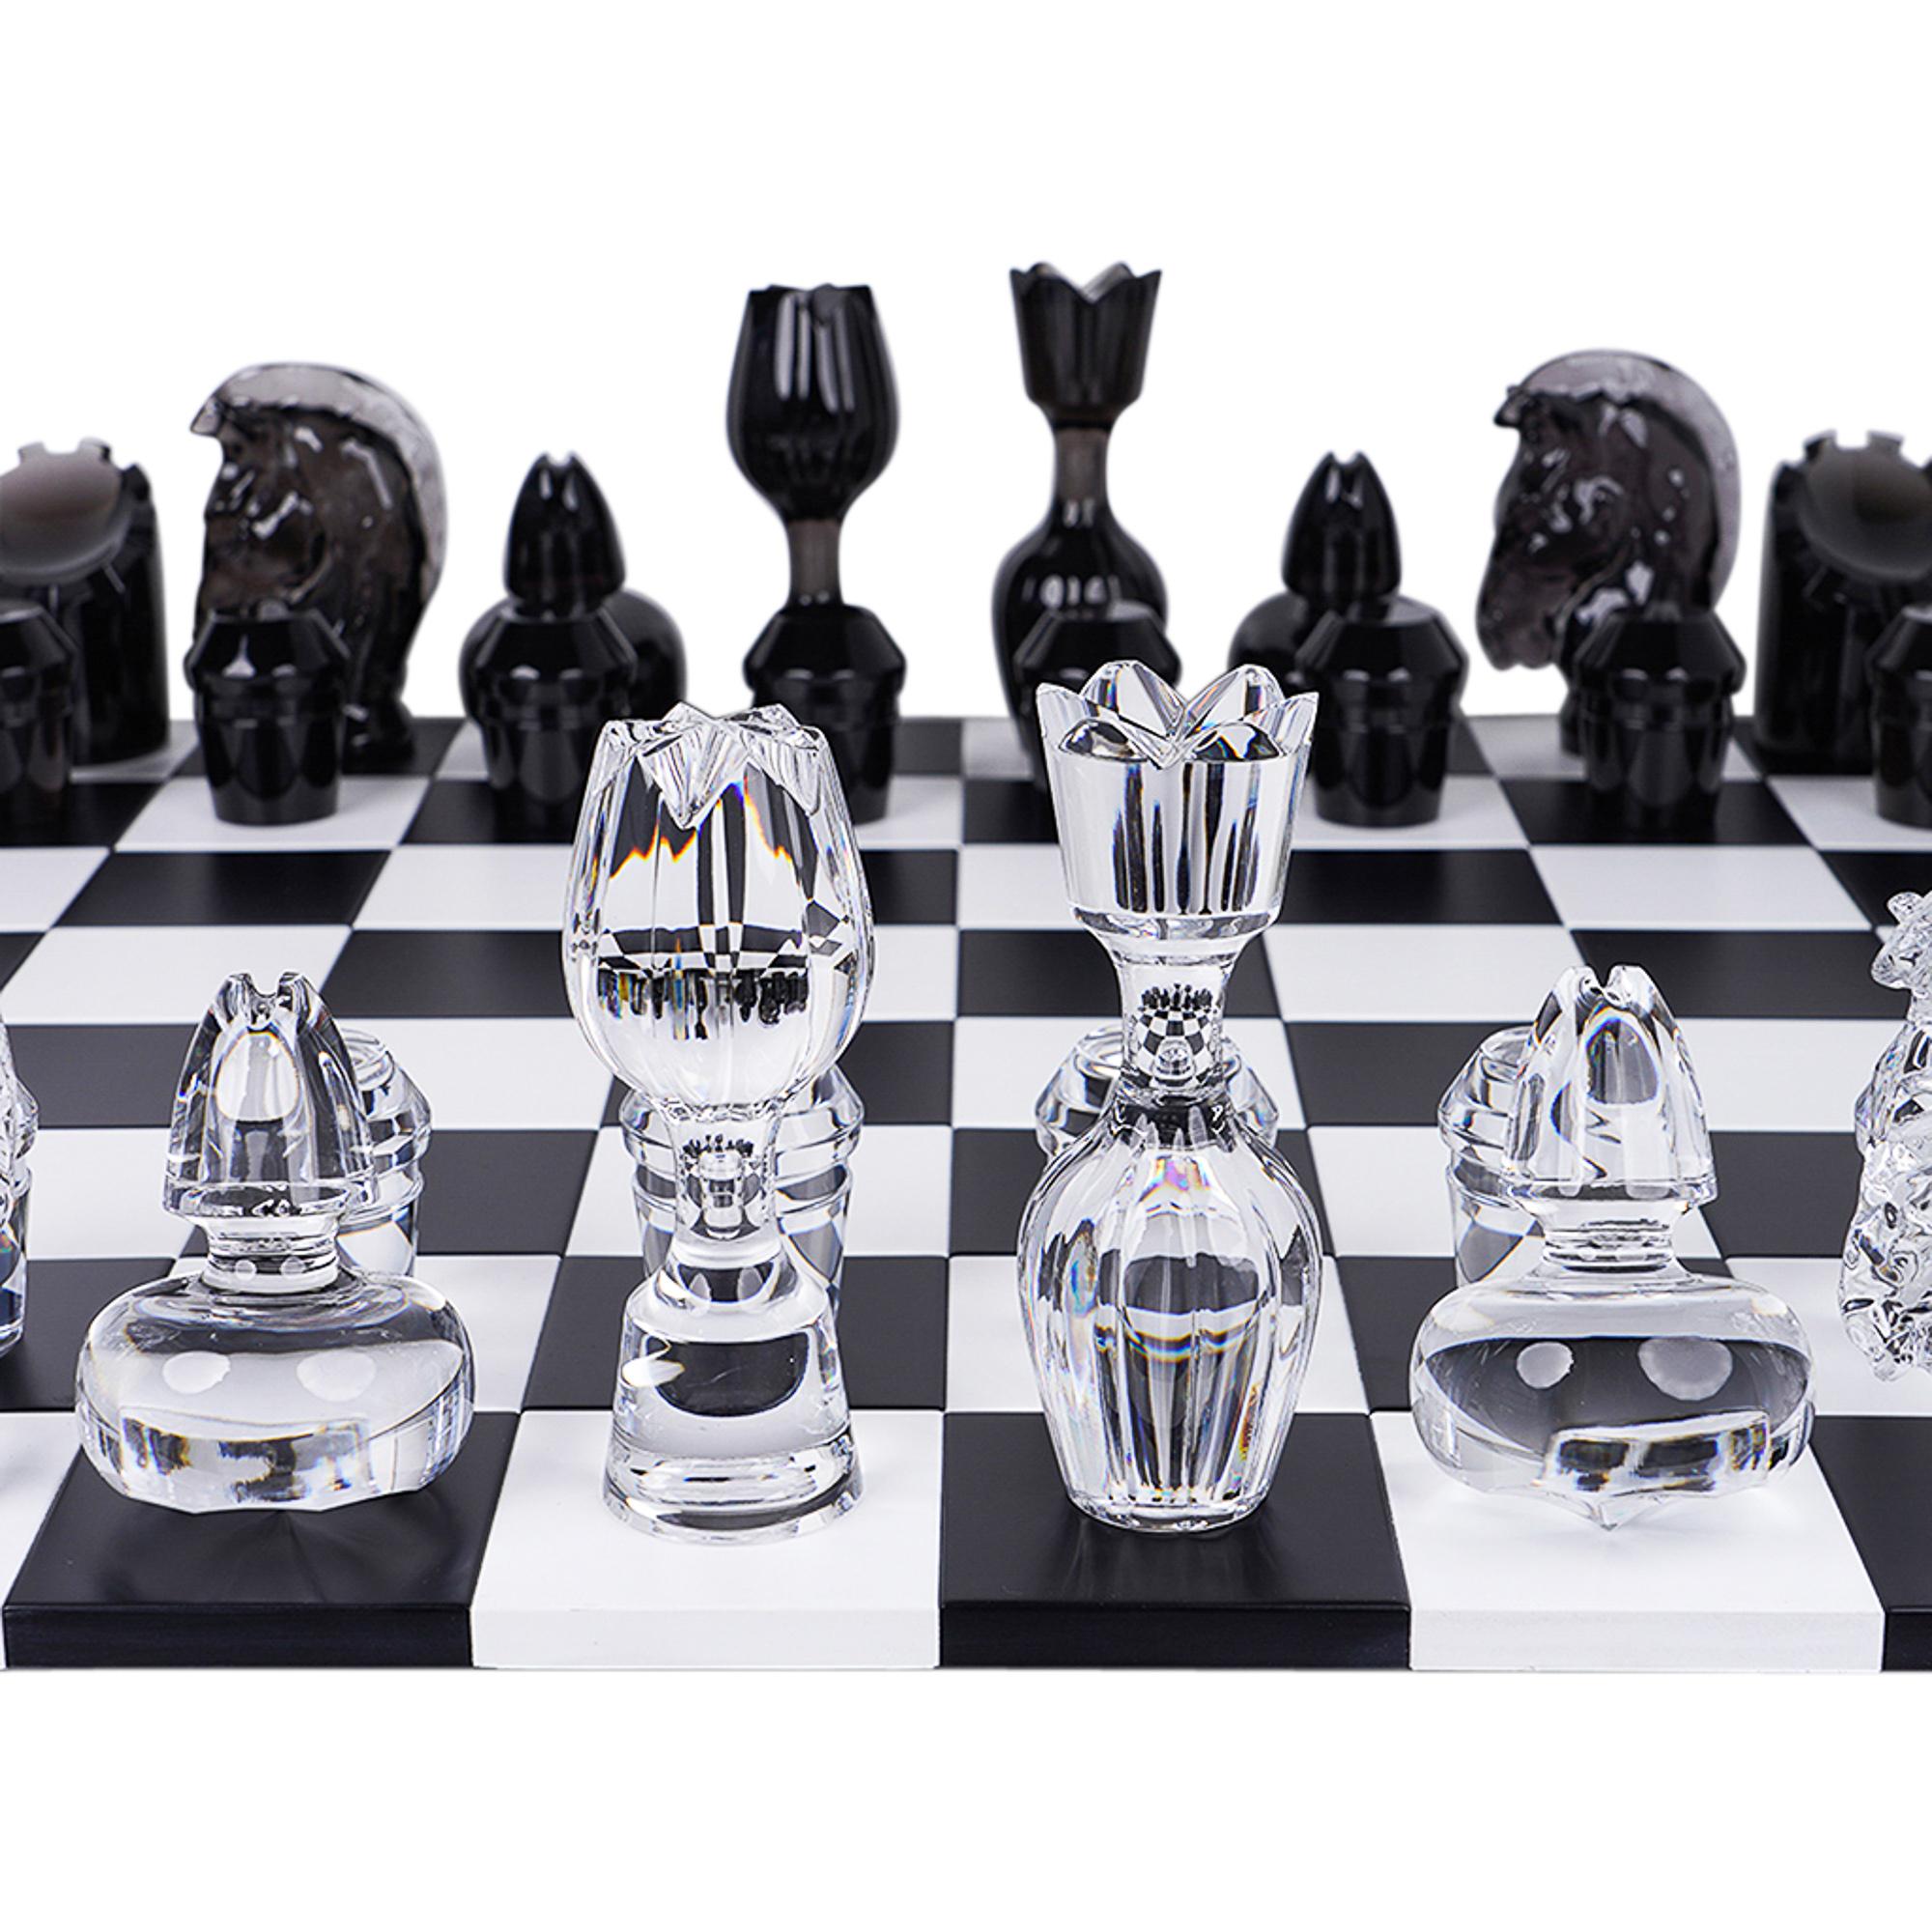 Mightychic bietet eine limitierte Auflage des Saint-Louis Schachspiels in Jeu Flanell-Grau und Holz an.
Jede Schachfigur ist von Saint-Louis' klassischen Karaffenverschlüssen inspiriert.
Das Schachspielbrett besteht aus Buchenholz und ist mit einem